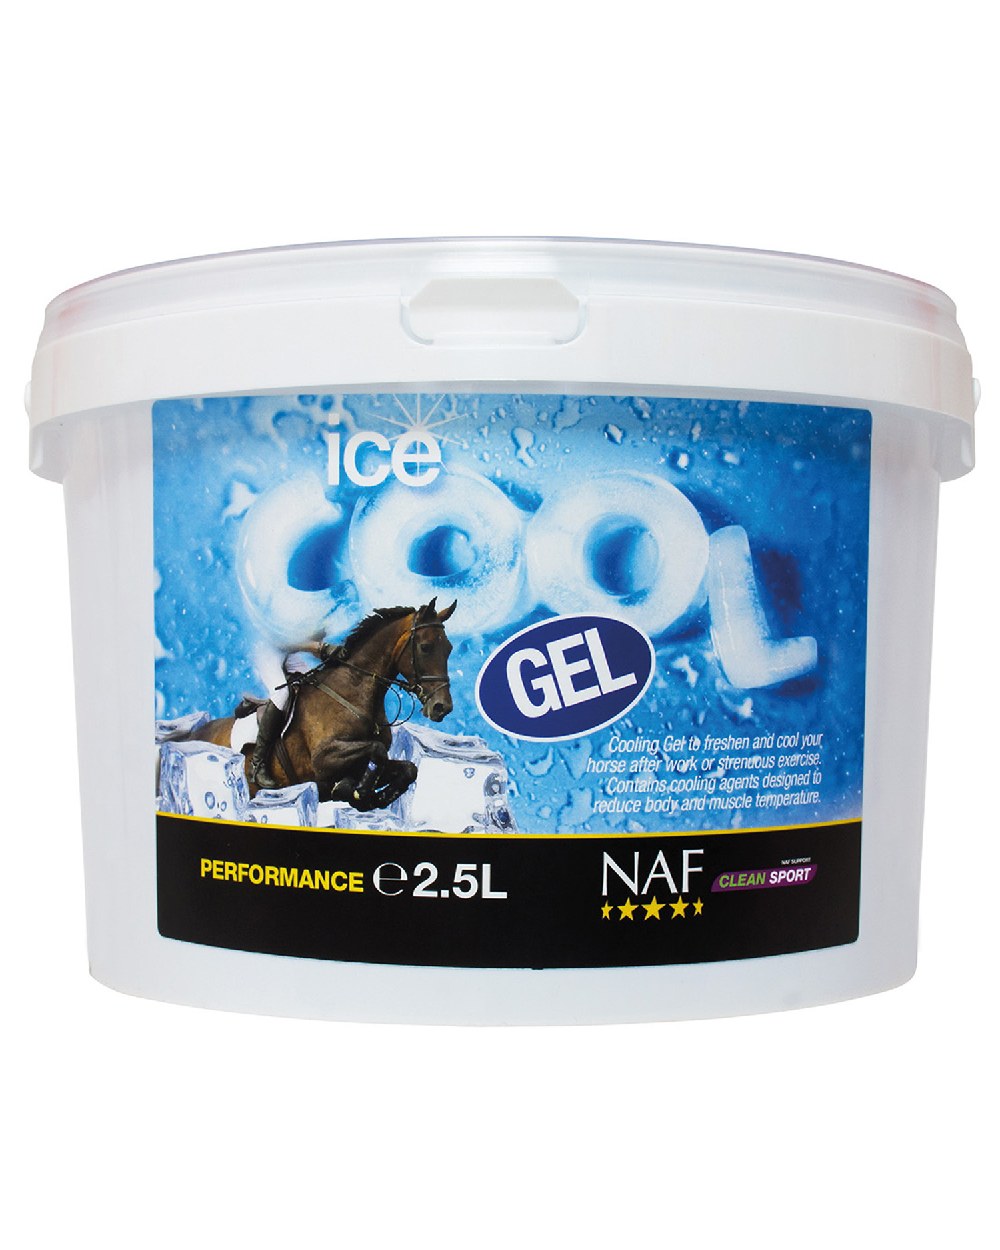 NAF Ice Cool Gel 2.5lt on white background